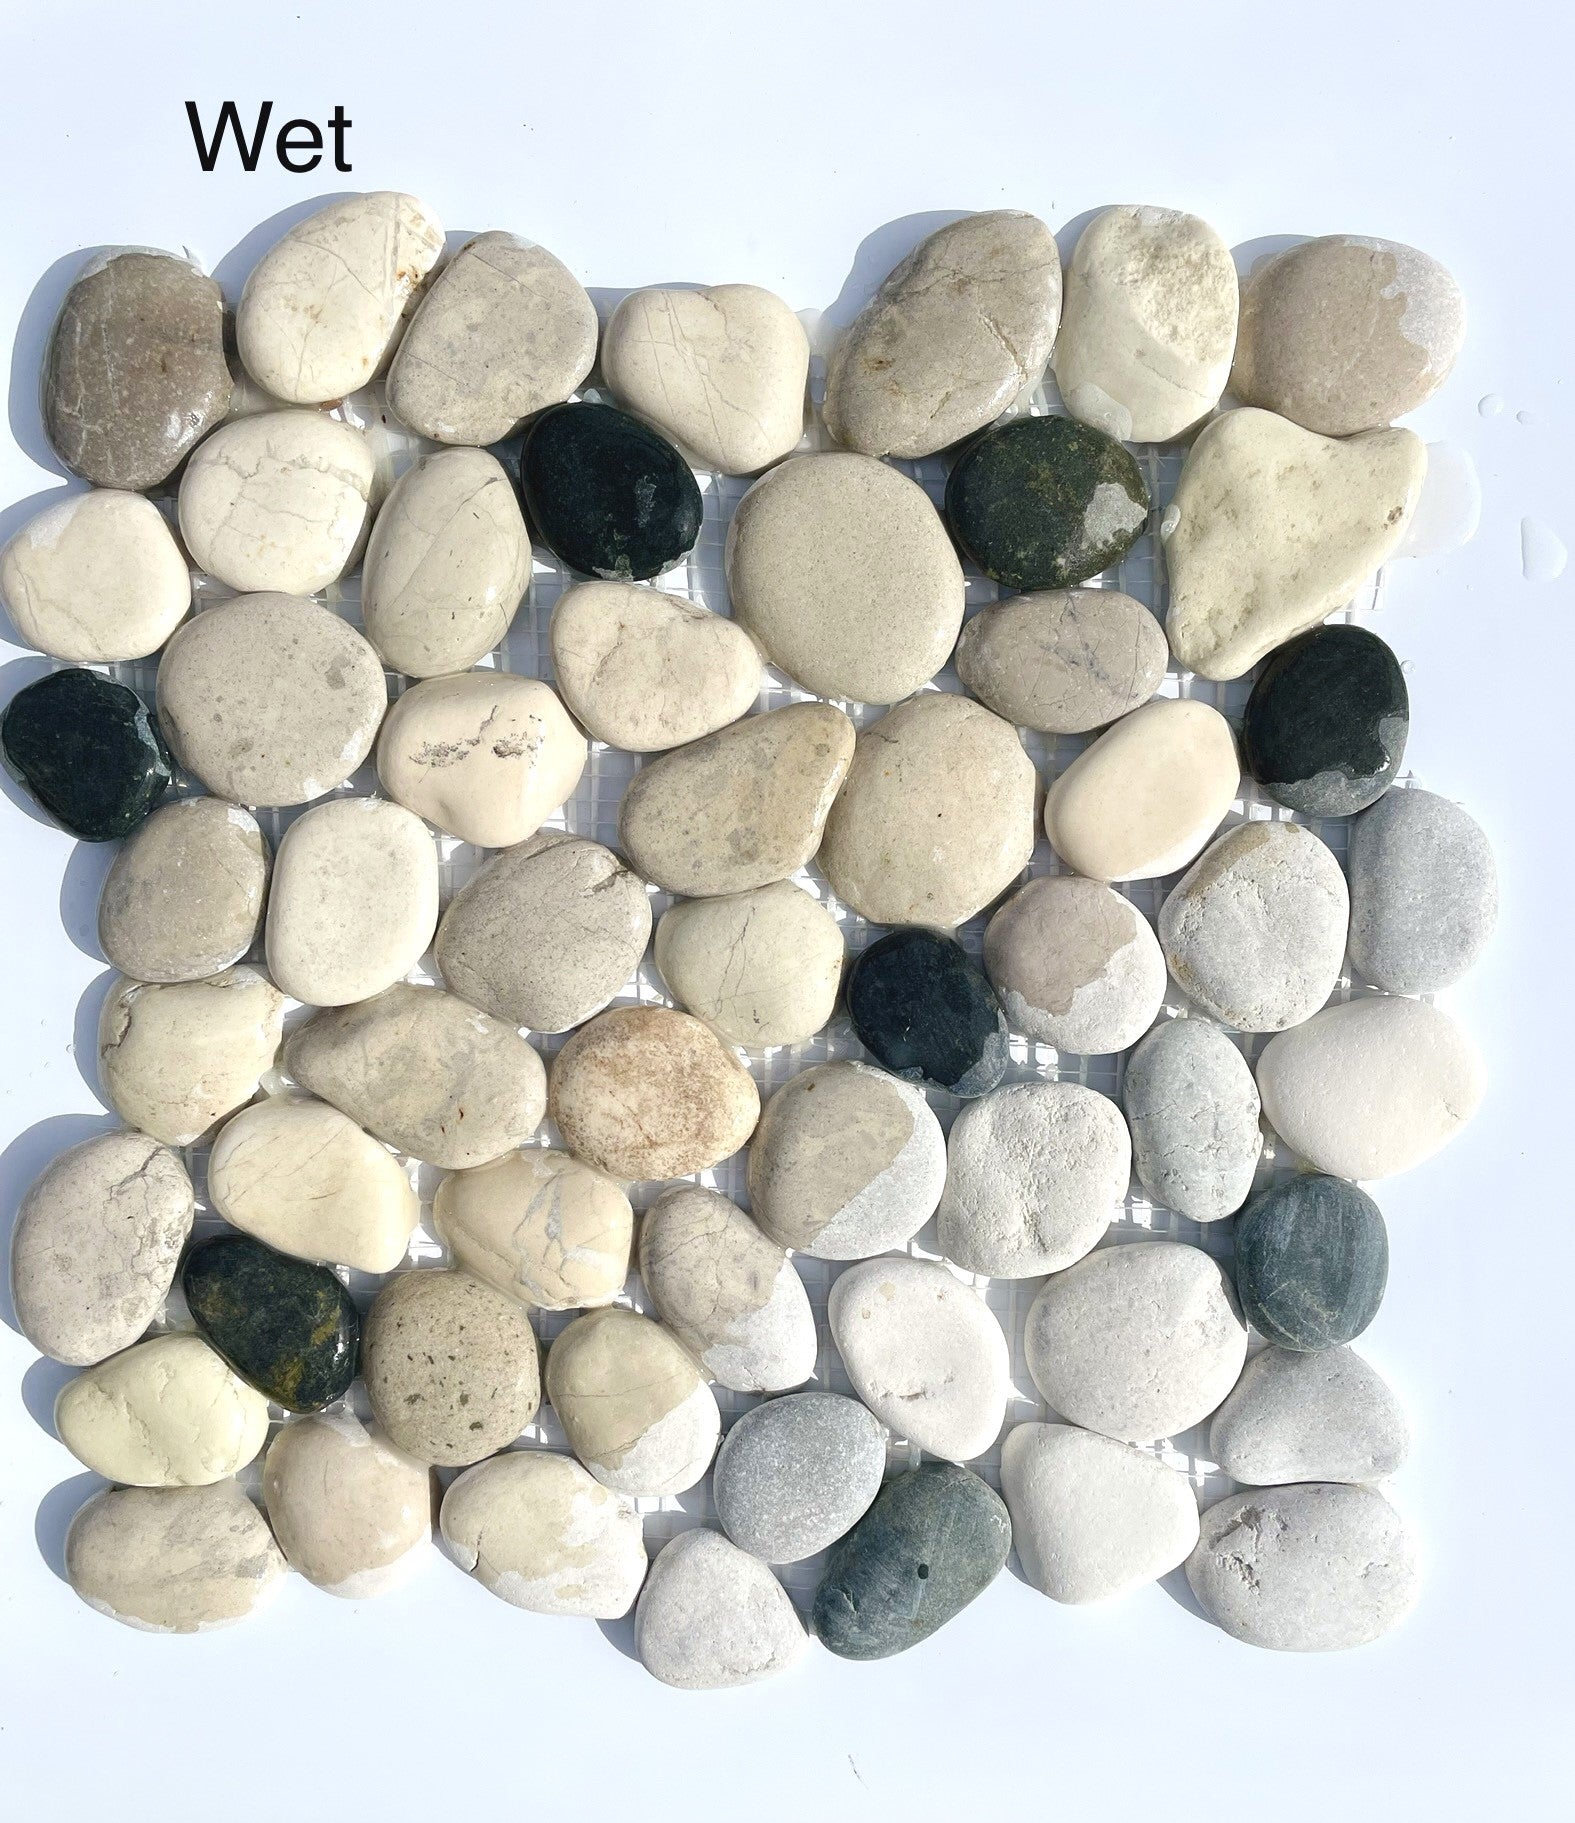 White-Gray-Black Leveled Pebble Mosaic 12" x 12"